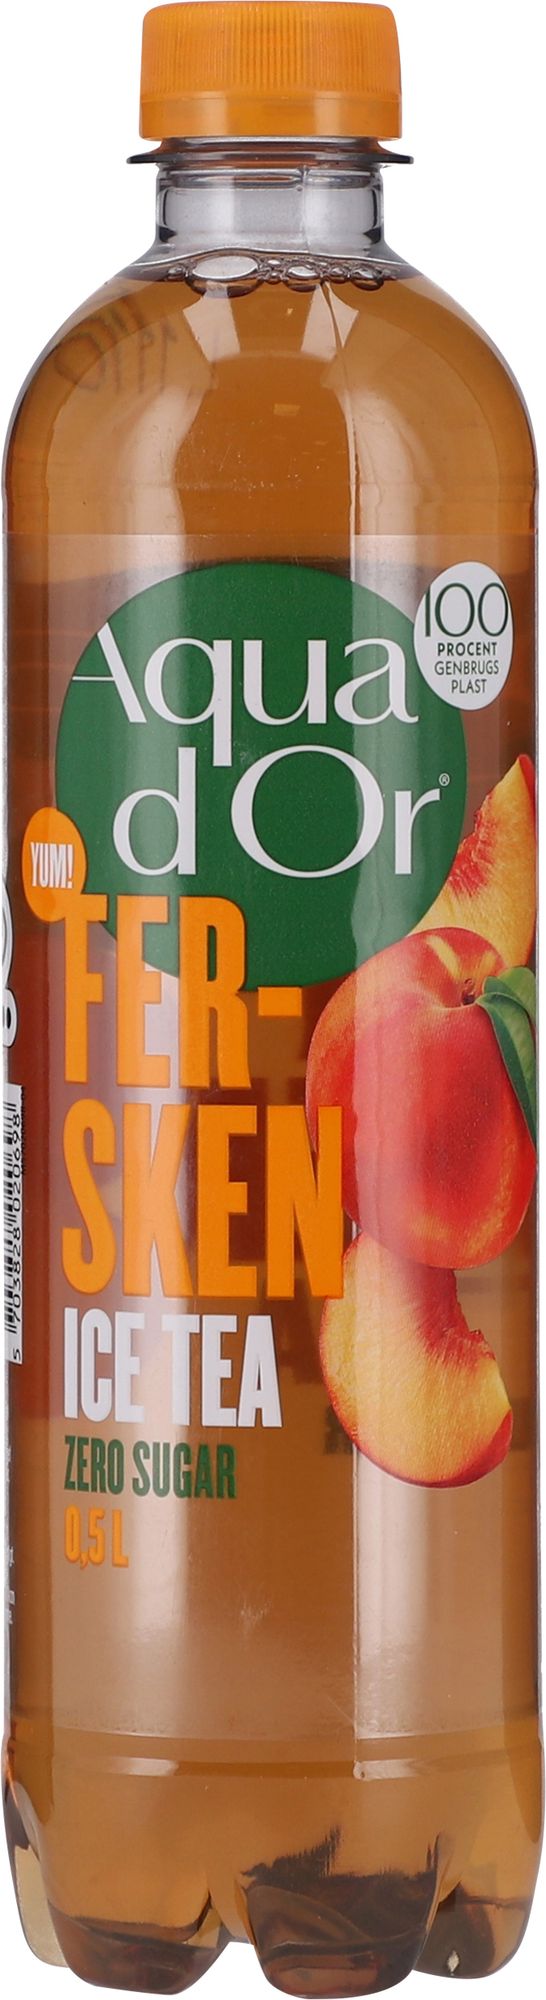 0,50 l AQUADOR IceTea Fersken - DK